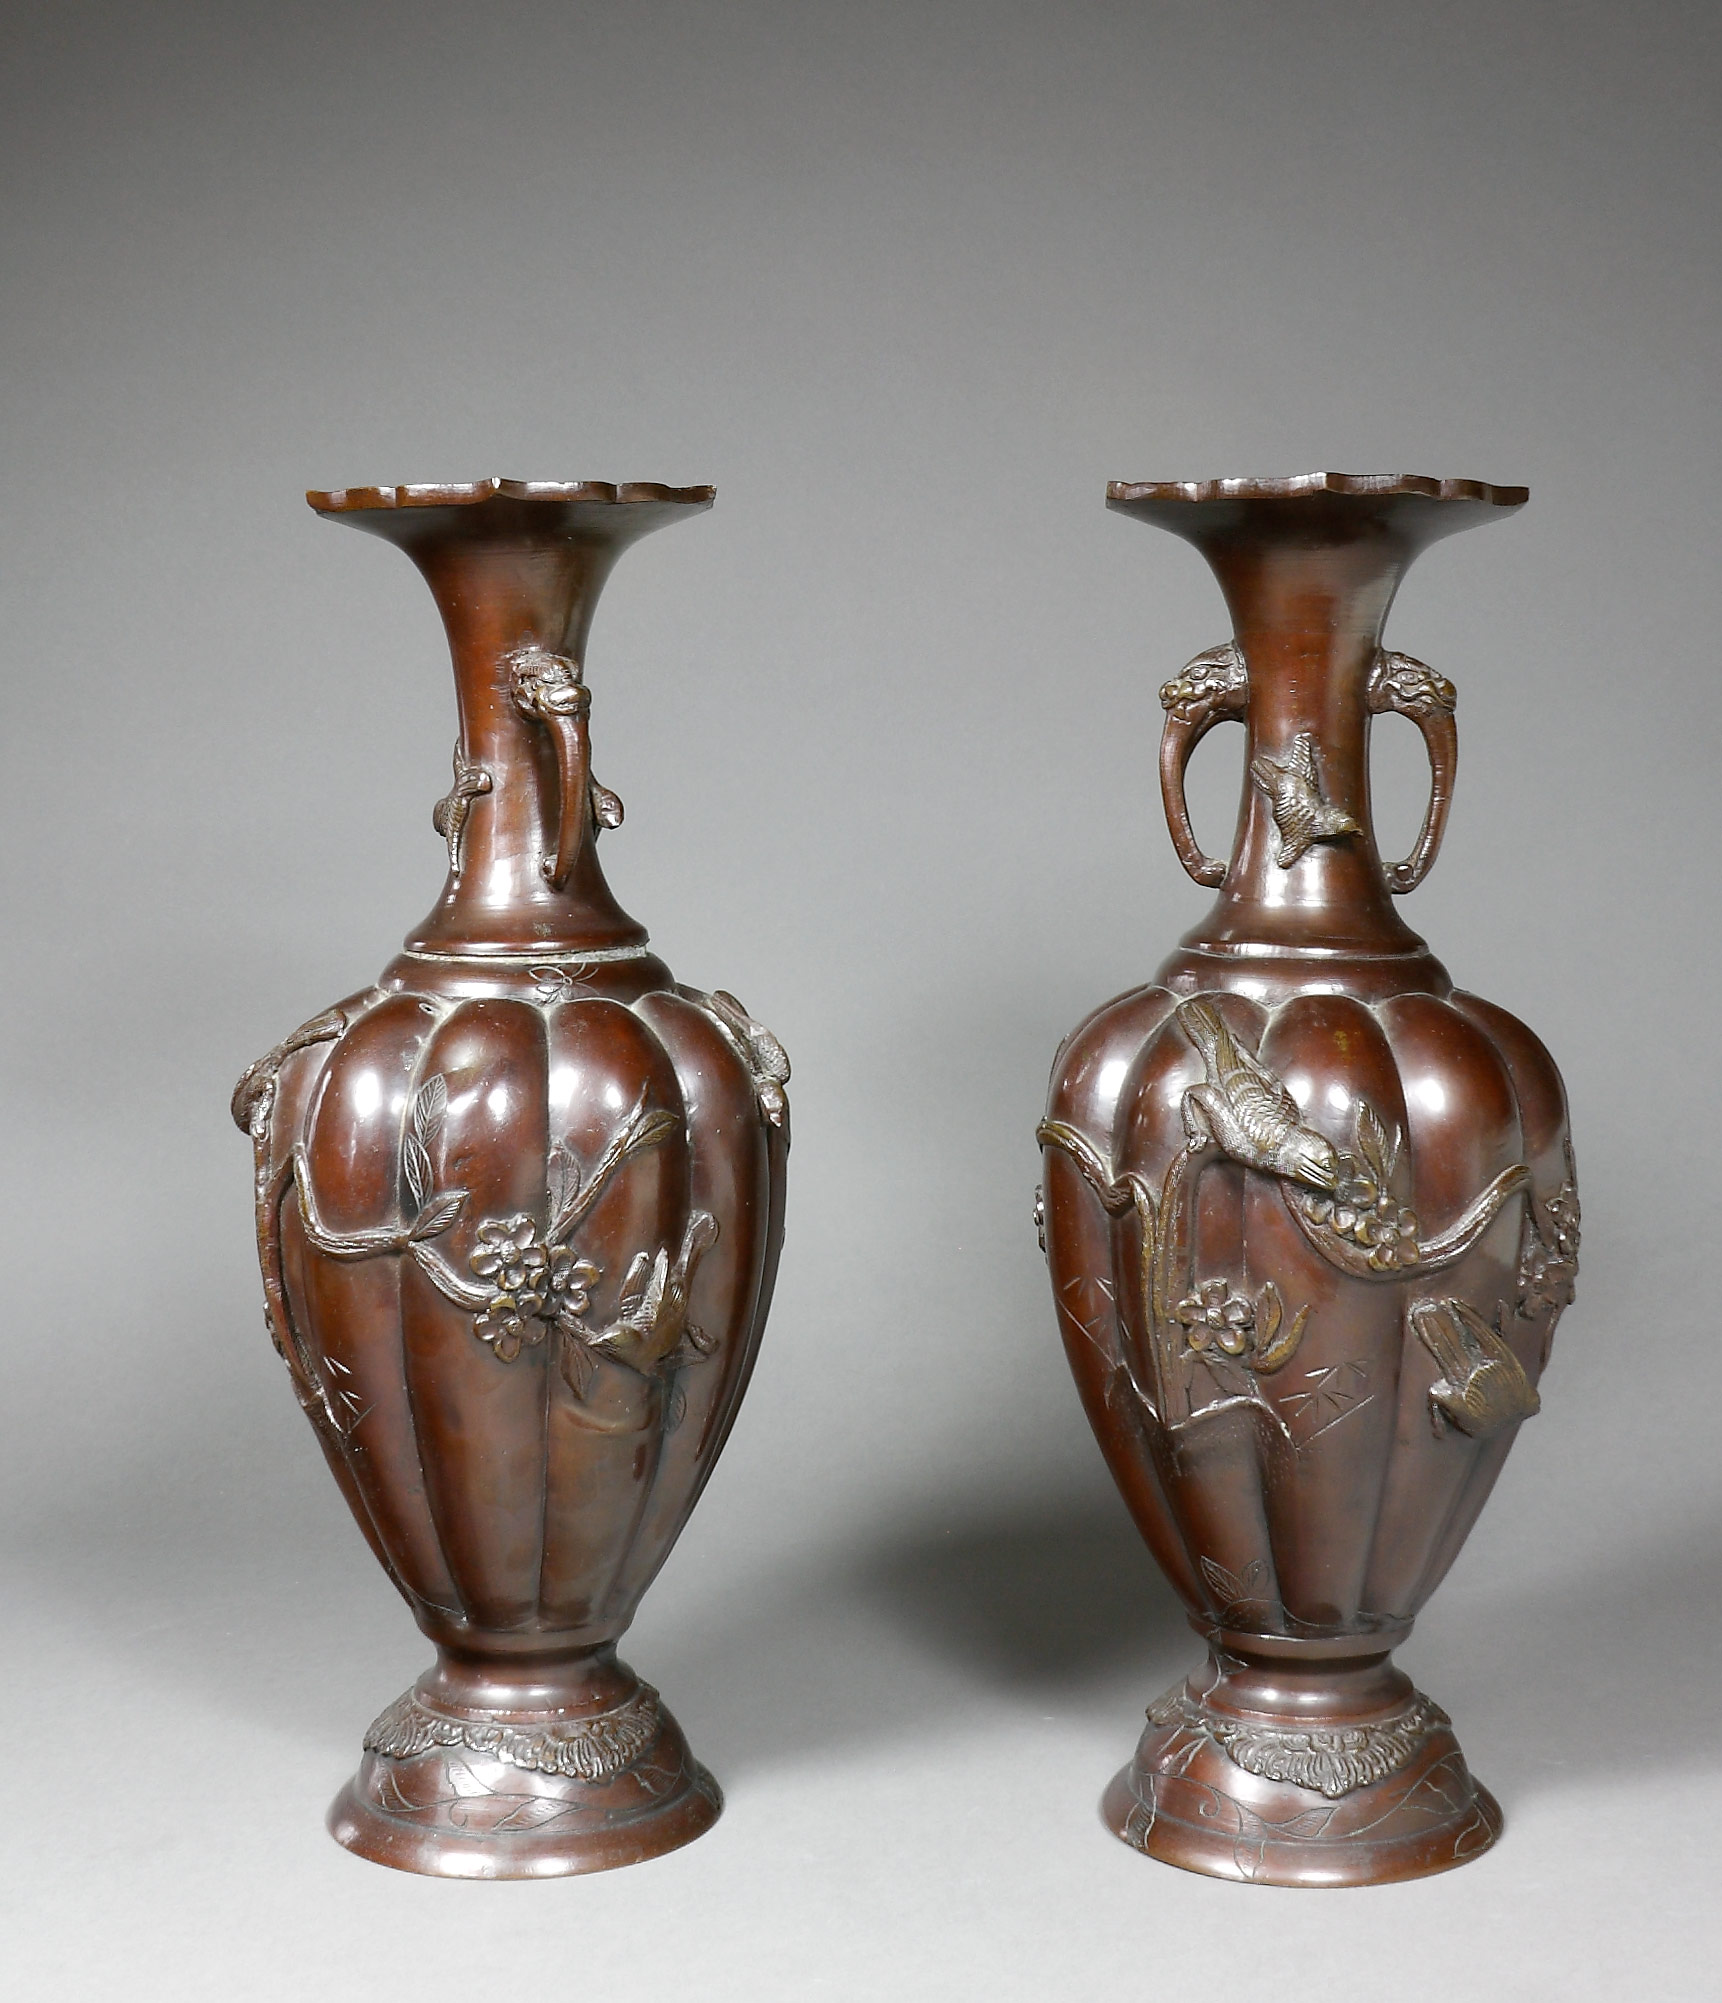 Auktionshaus Quentin Berlin  Glas Japan  Vasen  Bronze  Meiji  ein Paar Balusterform mit godronierter Wandung und erhabenem Reliefdekor von VÃ¶geln und Blumen. Am eingezogenen Hals z